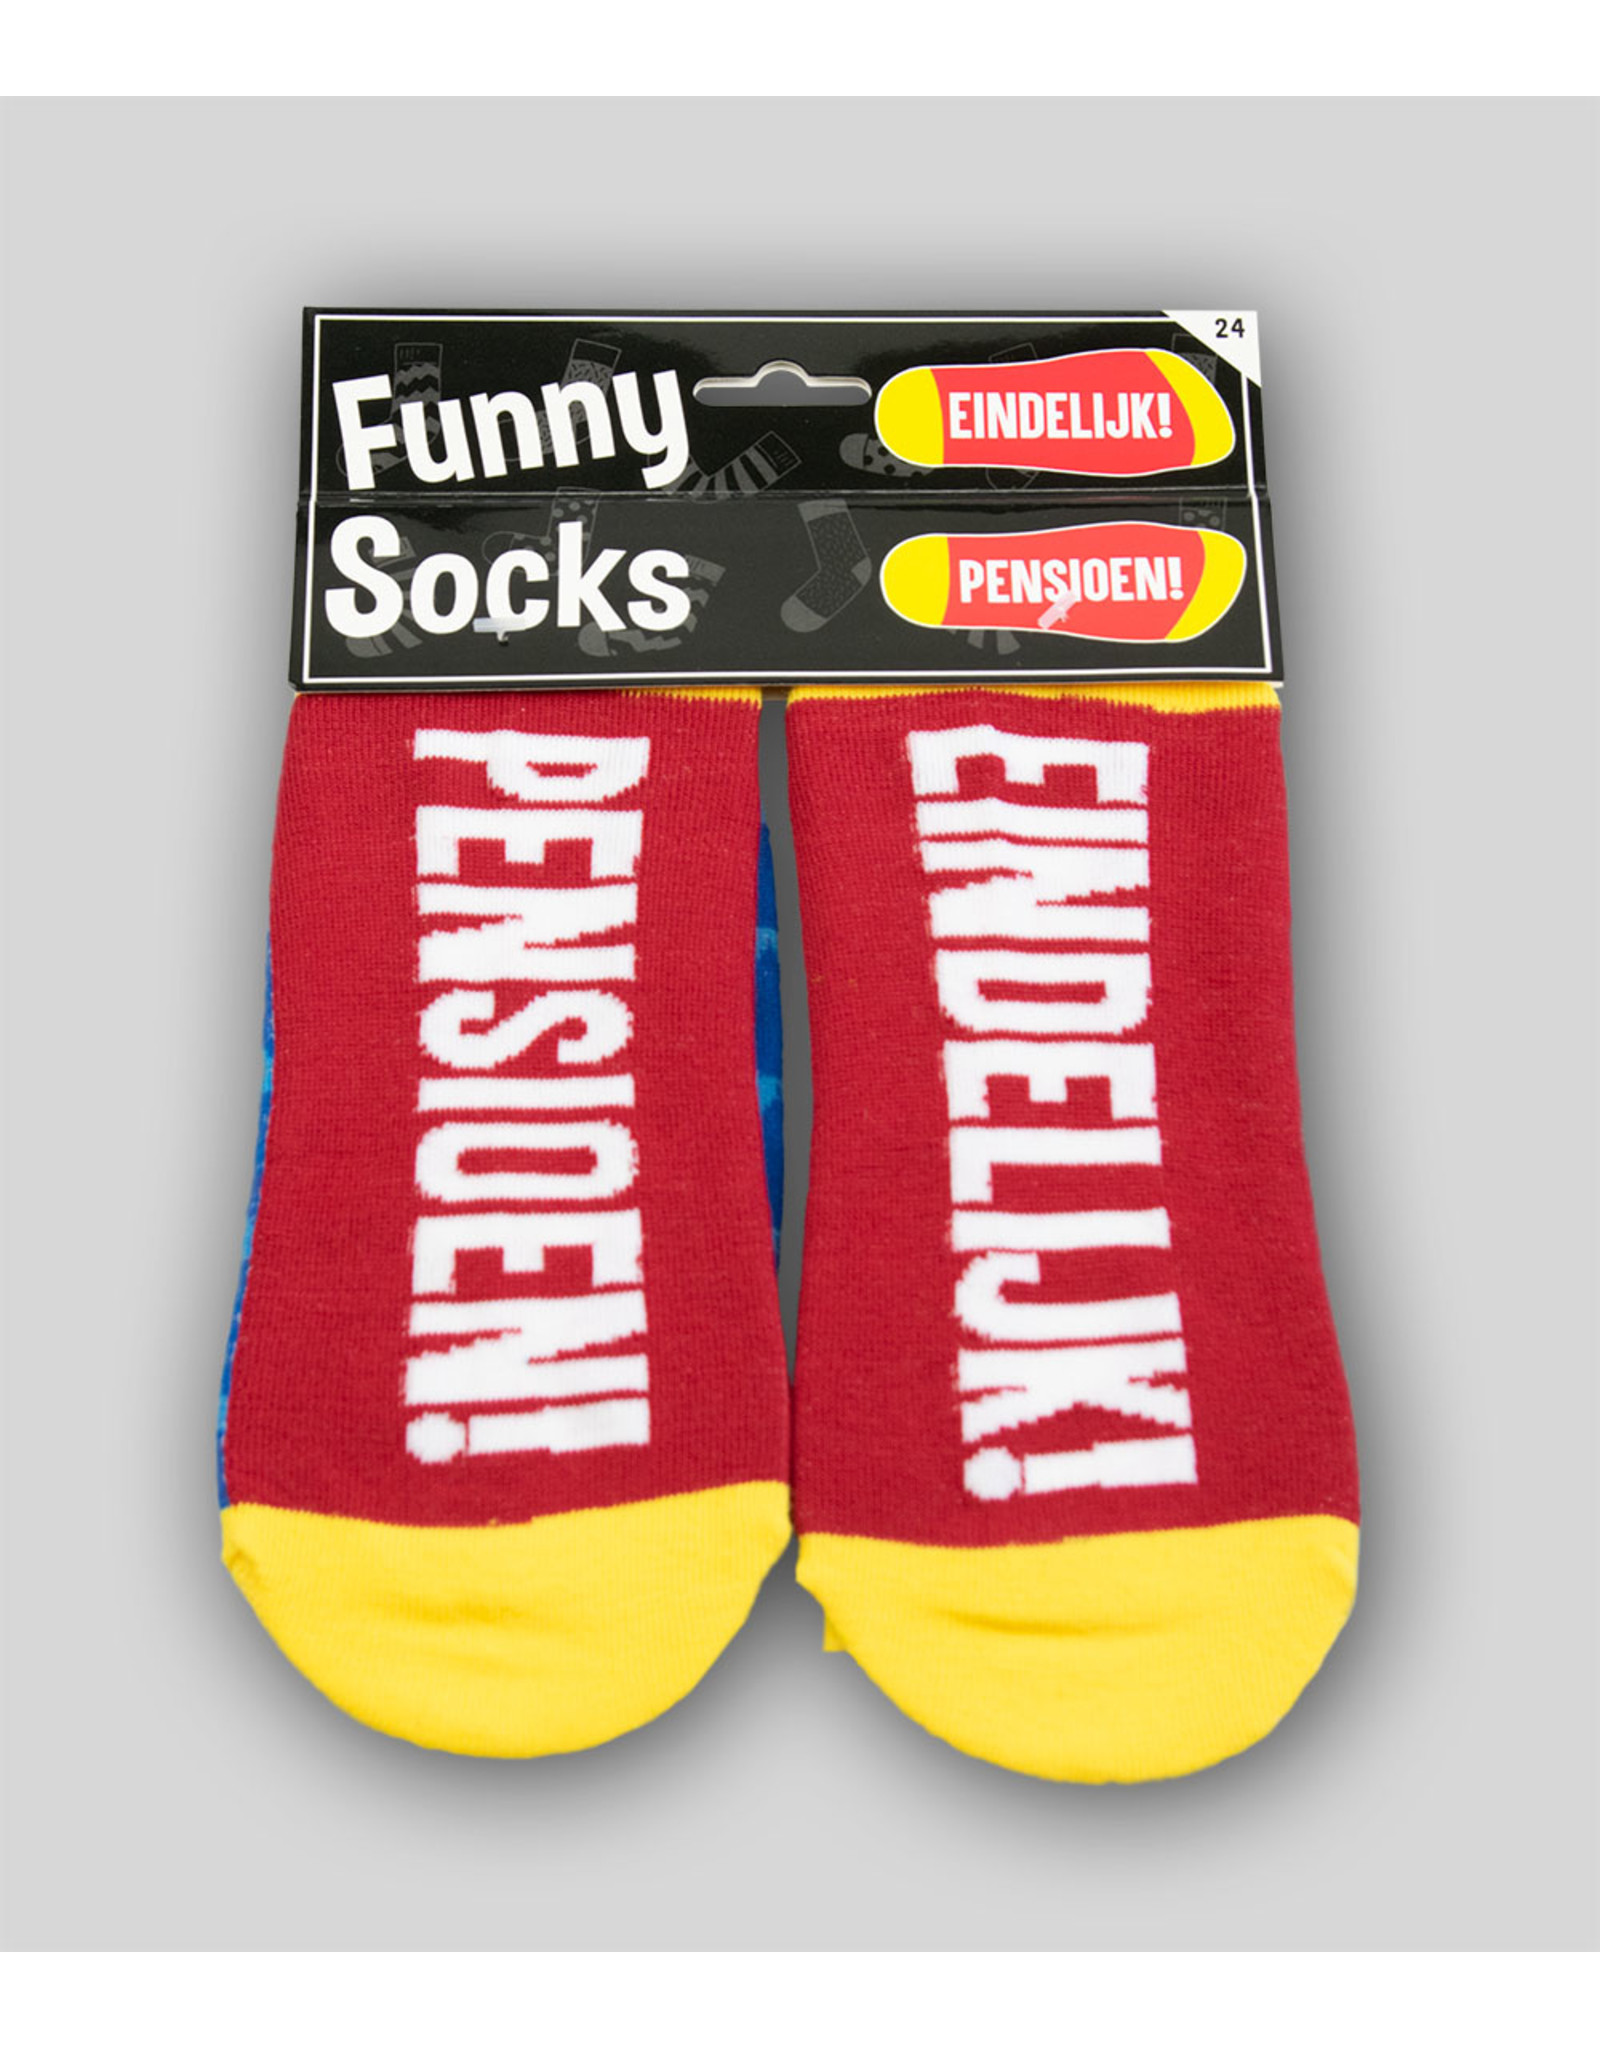 Funny Socks - Pensioen